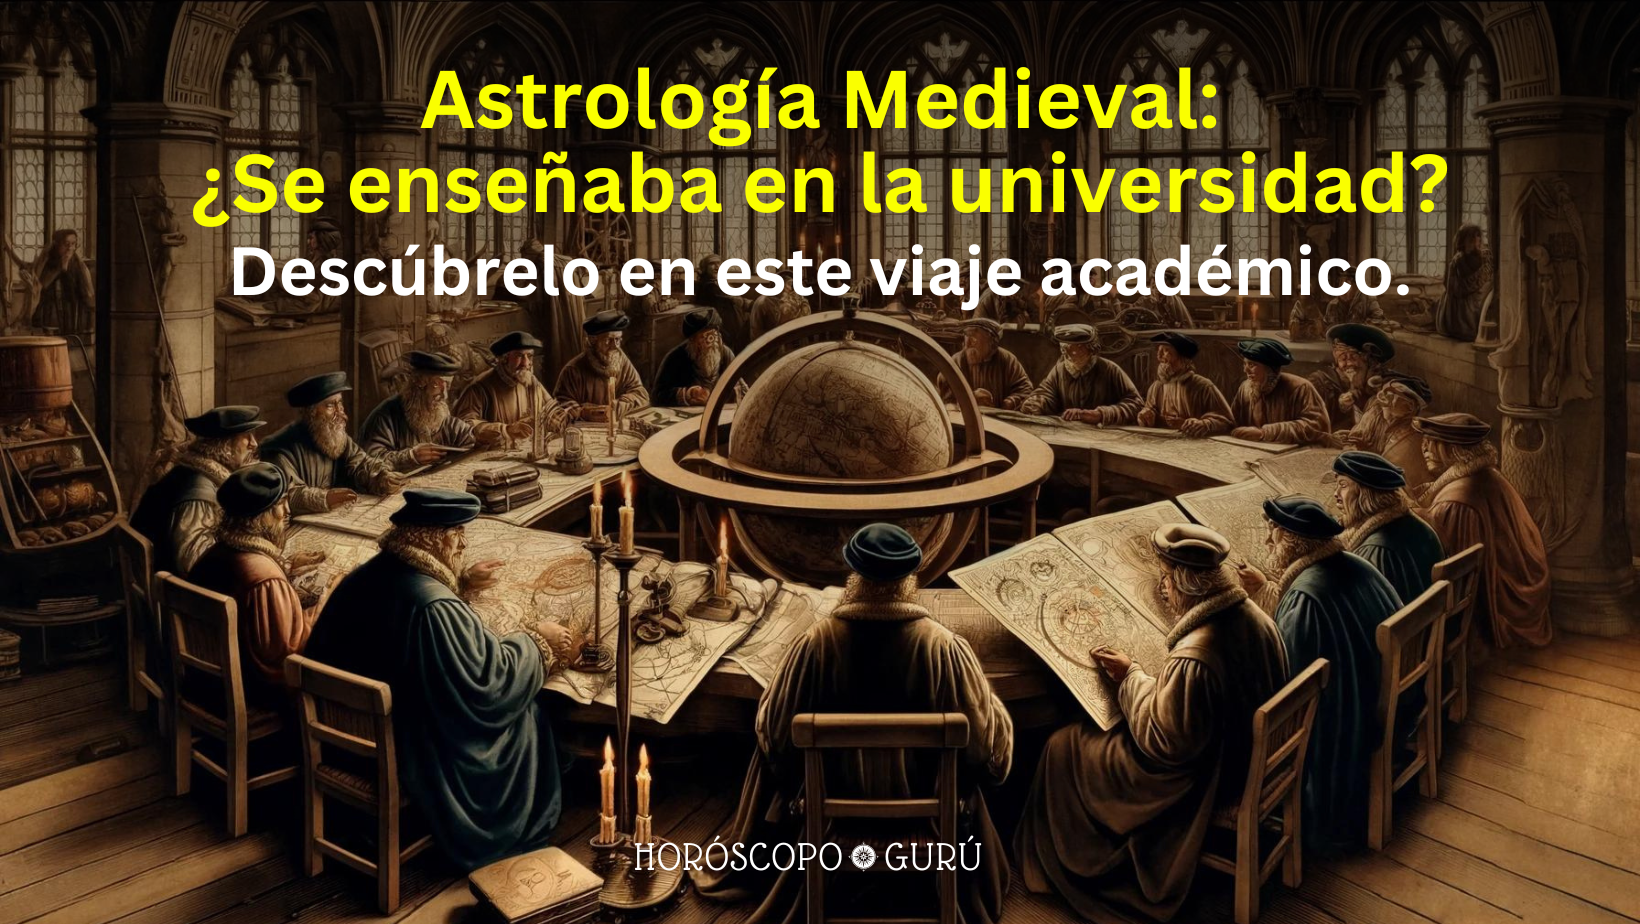 Astrología Medieval: ¿Se enseñaba en la universidad?